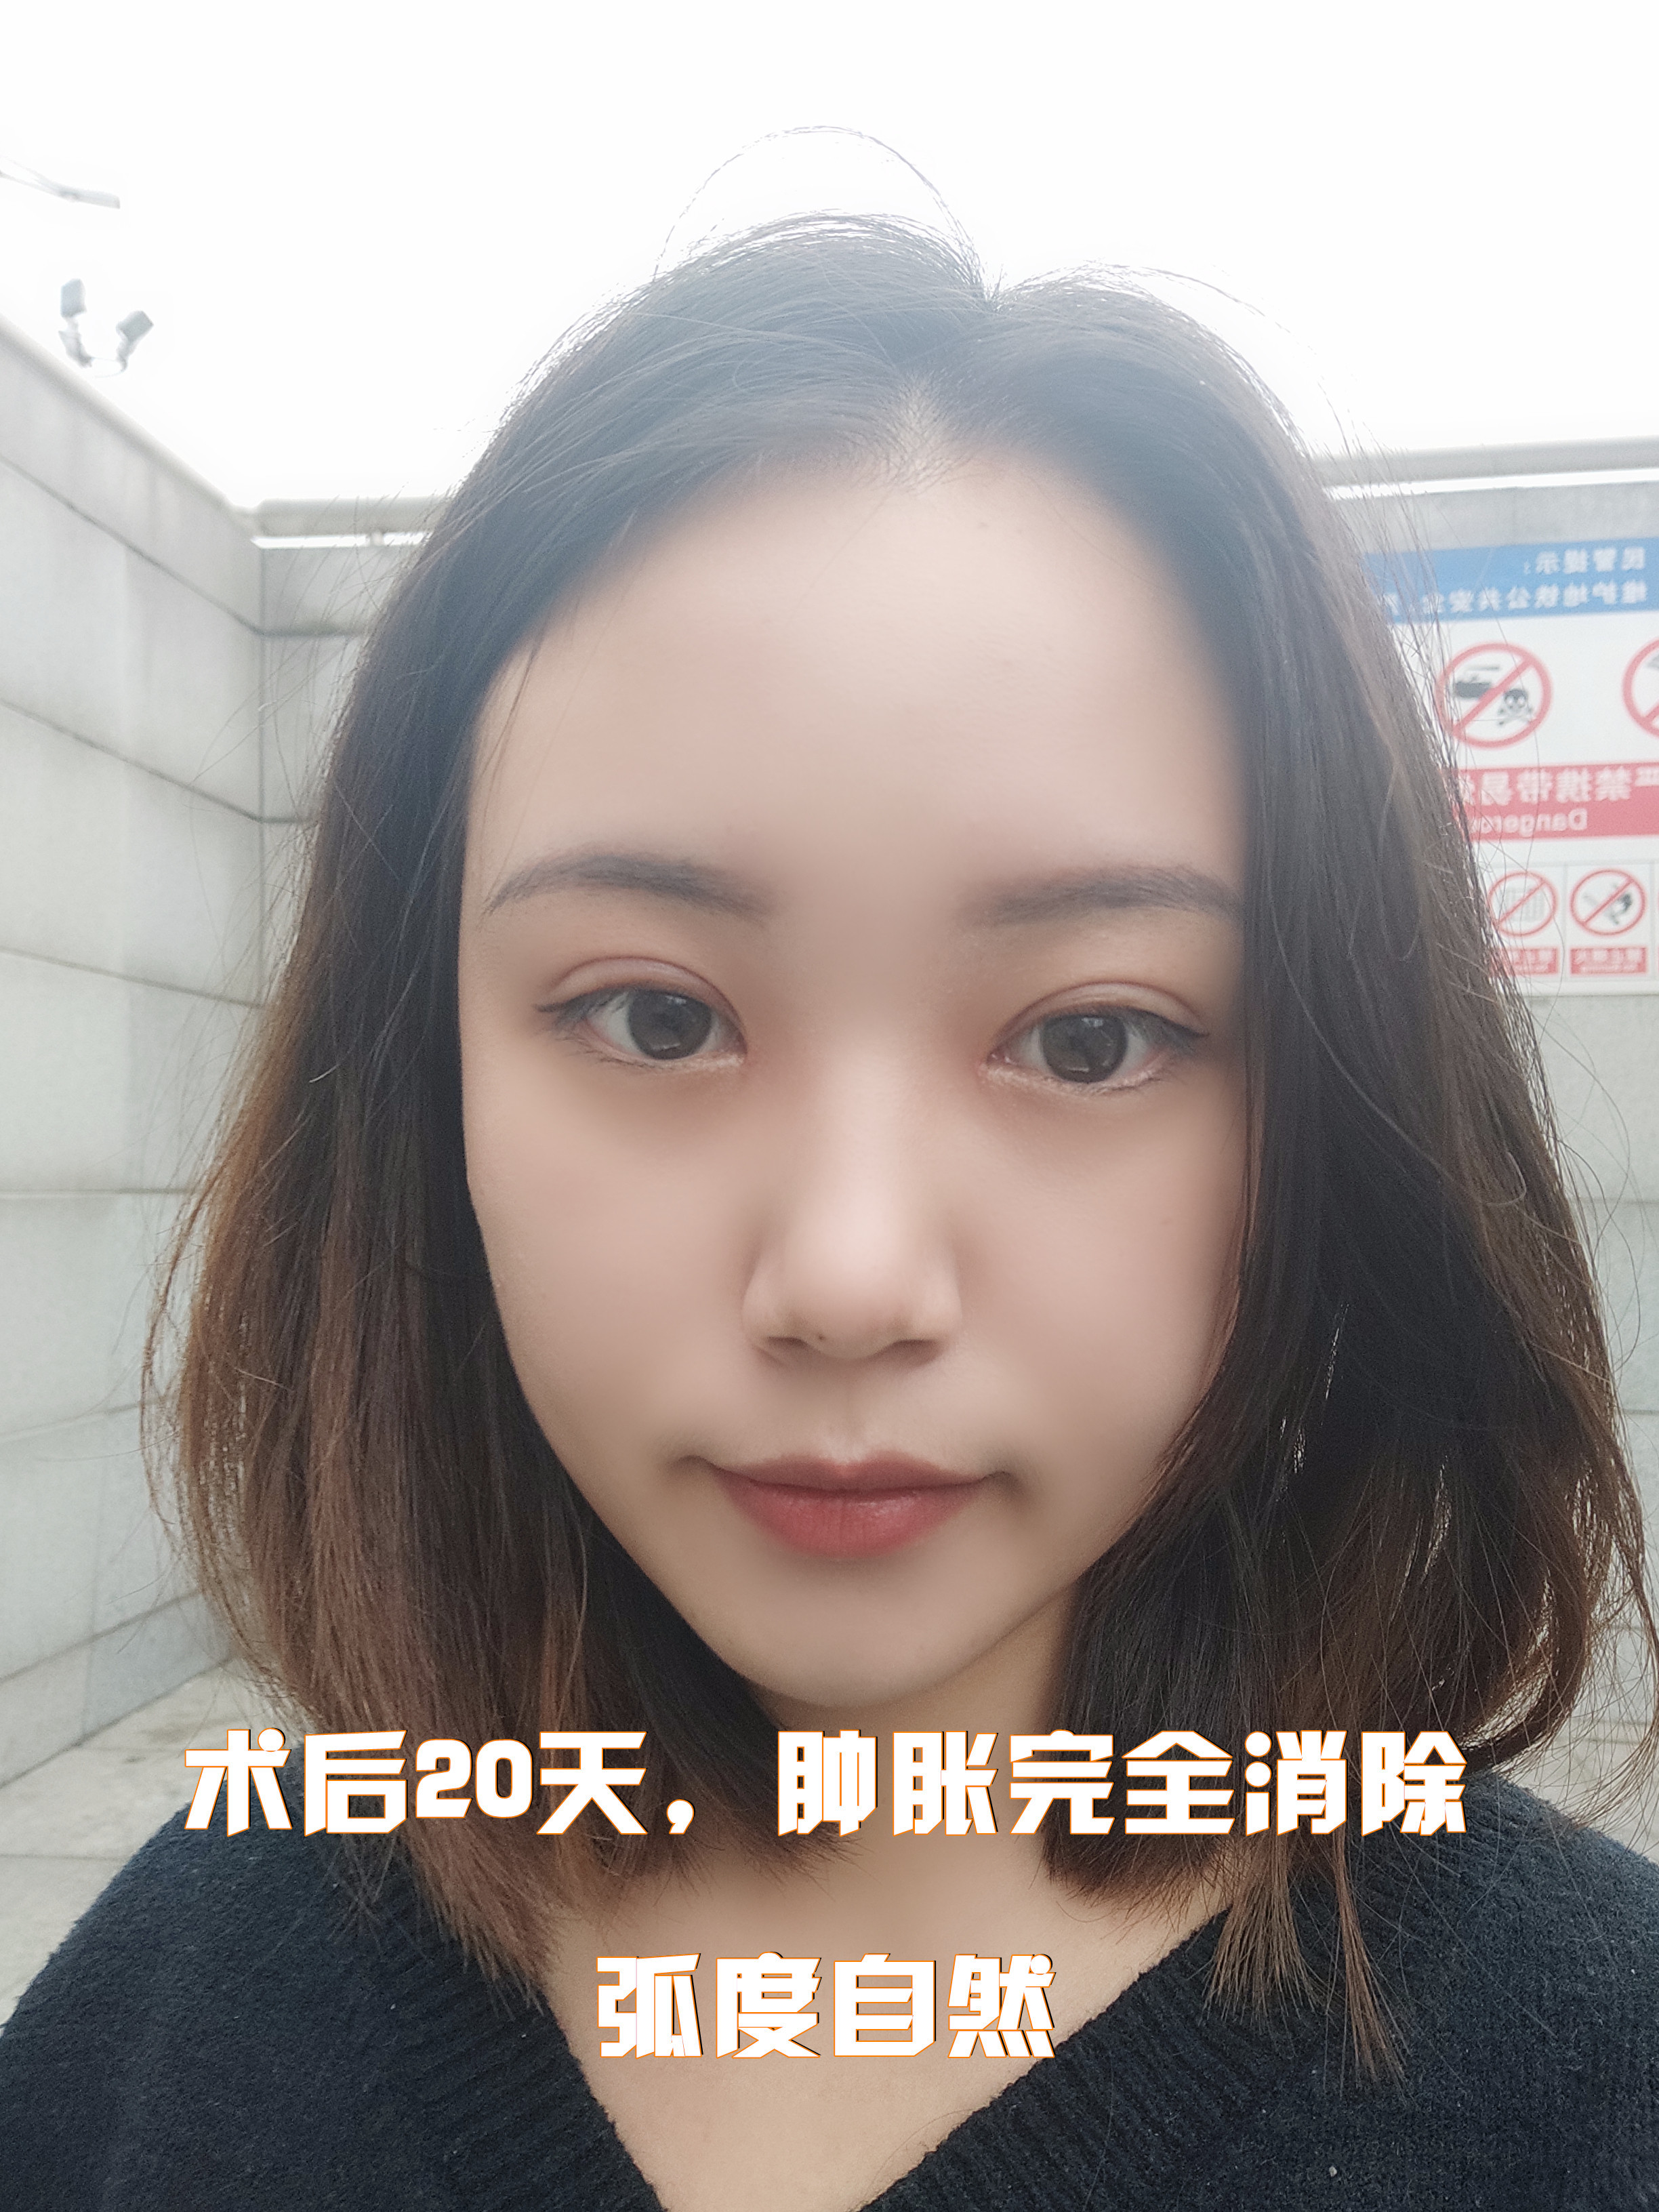 今天给大家分享的是一位来自重庆的姑娘,姑娘天生单眼_圈子-新氧美容